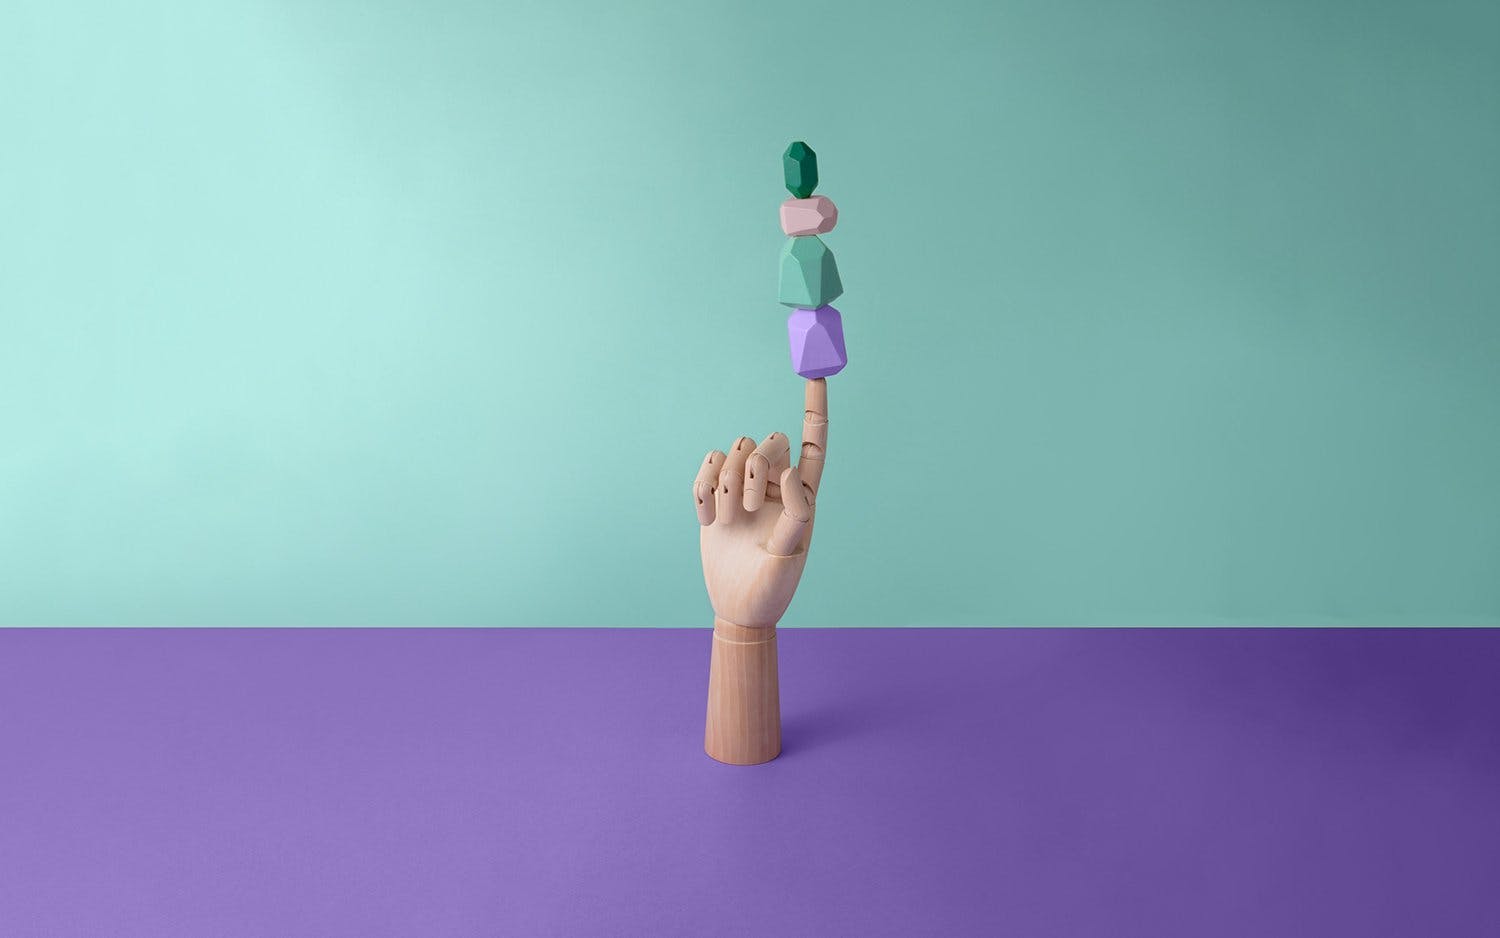 Wooden hand balancing block shapes